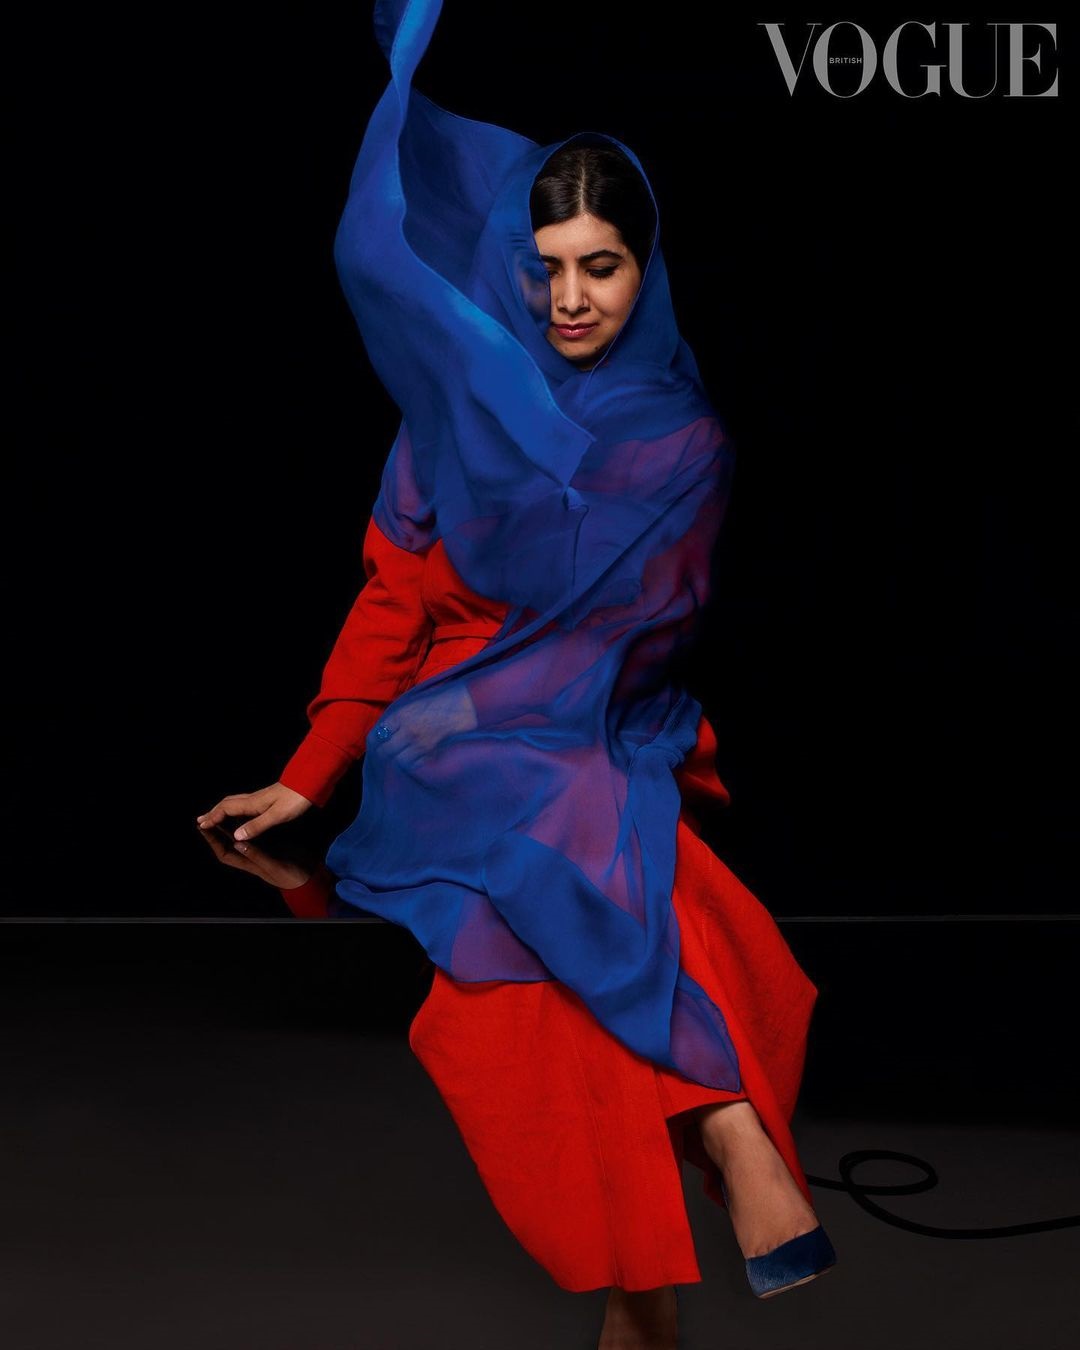 มาลาลา ยูซาฟไซ สวมฮิญาบสีแดงสด ขึ้นปก Vogue มั่นใจ!